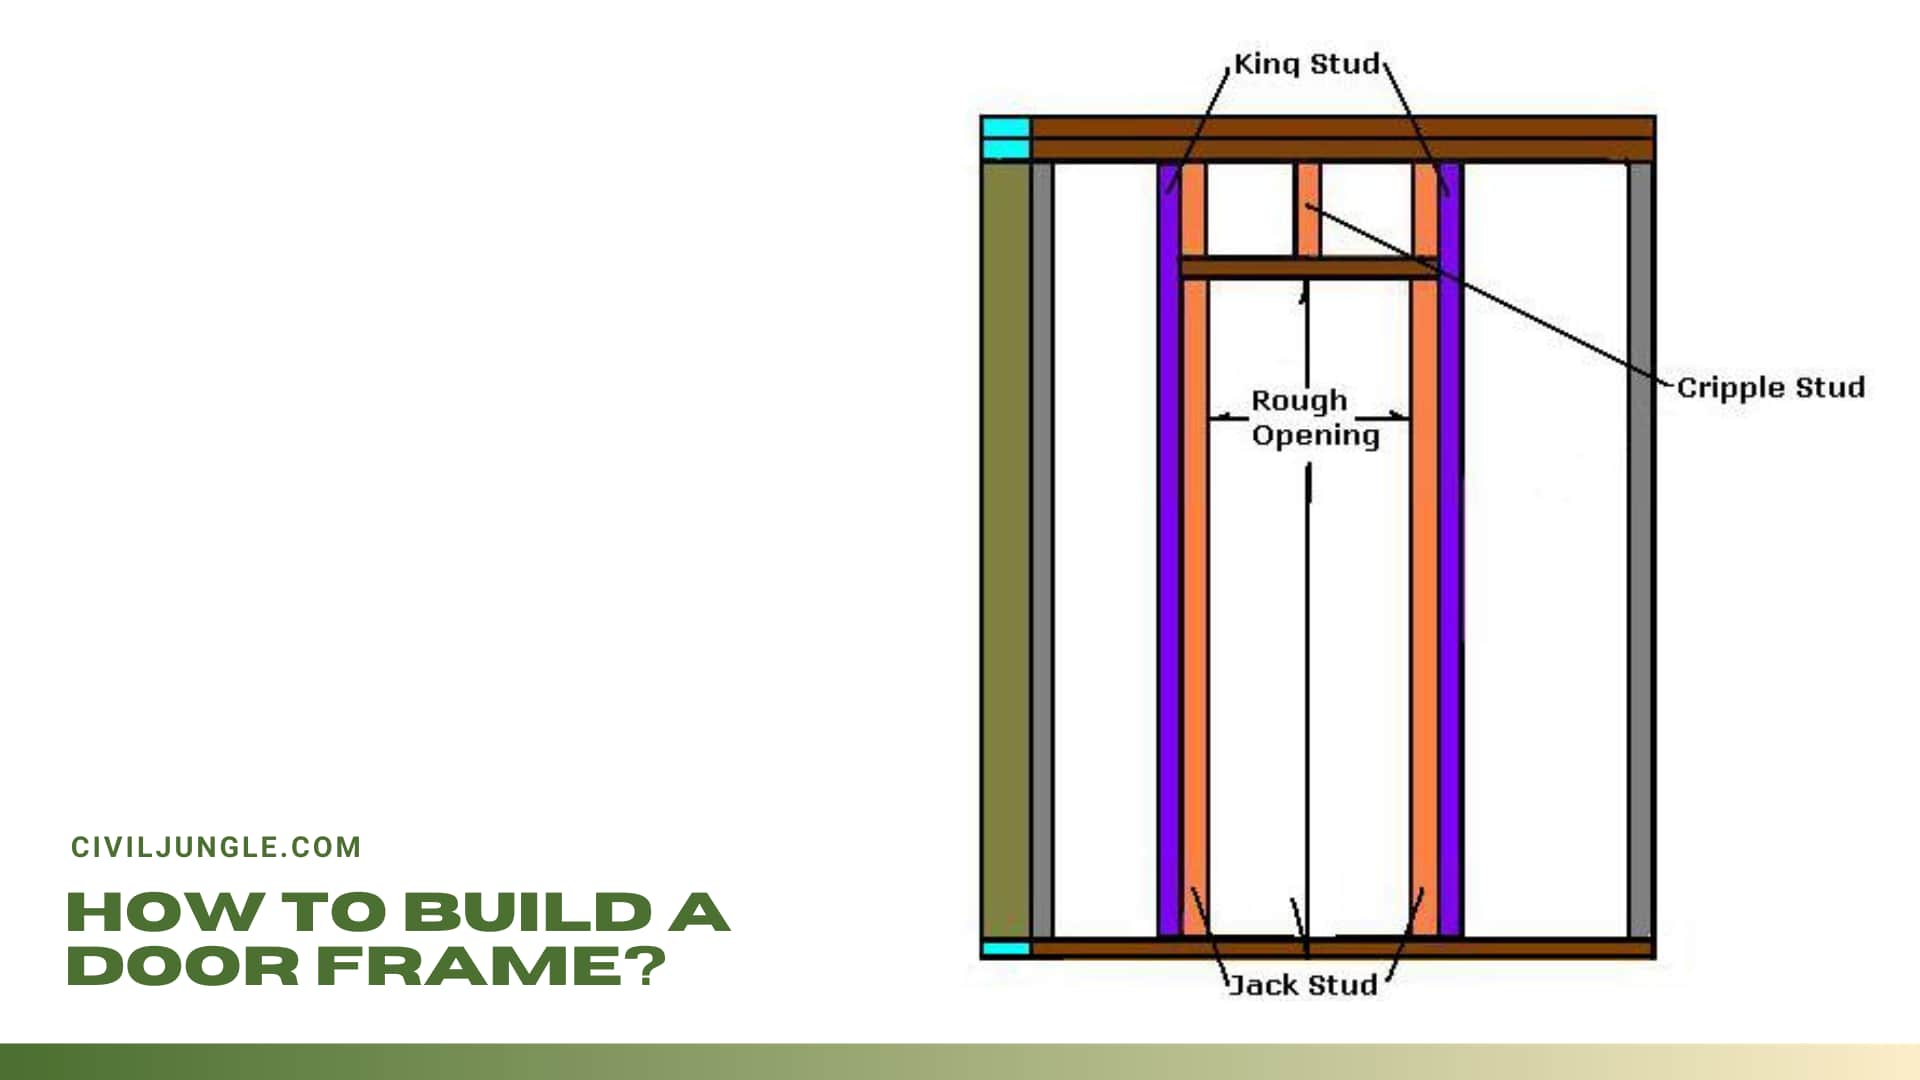 How to Build a Door Frame?